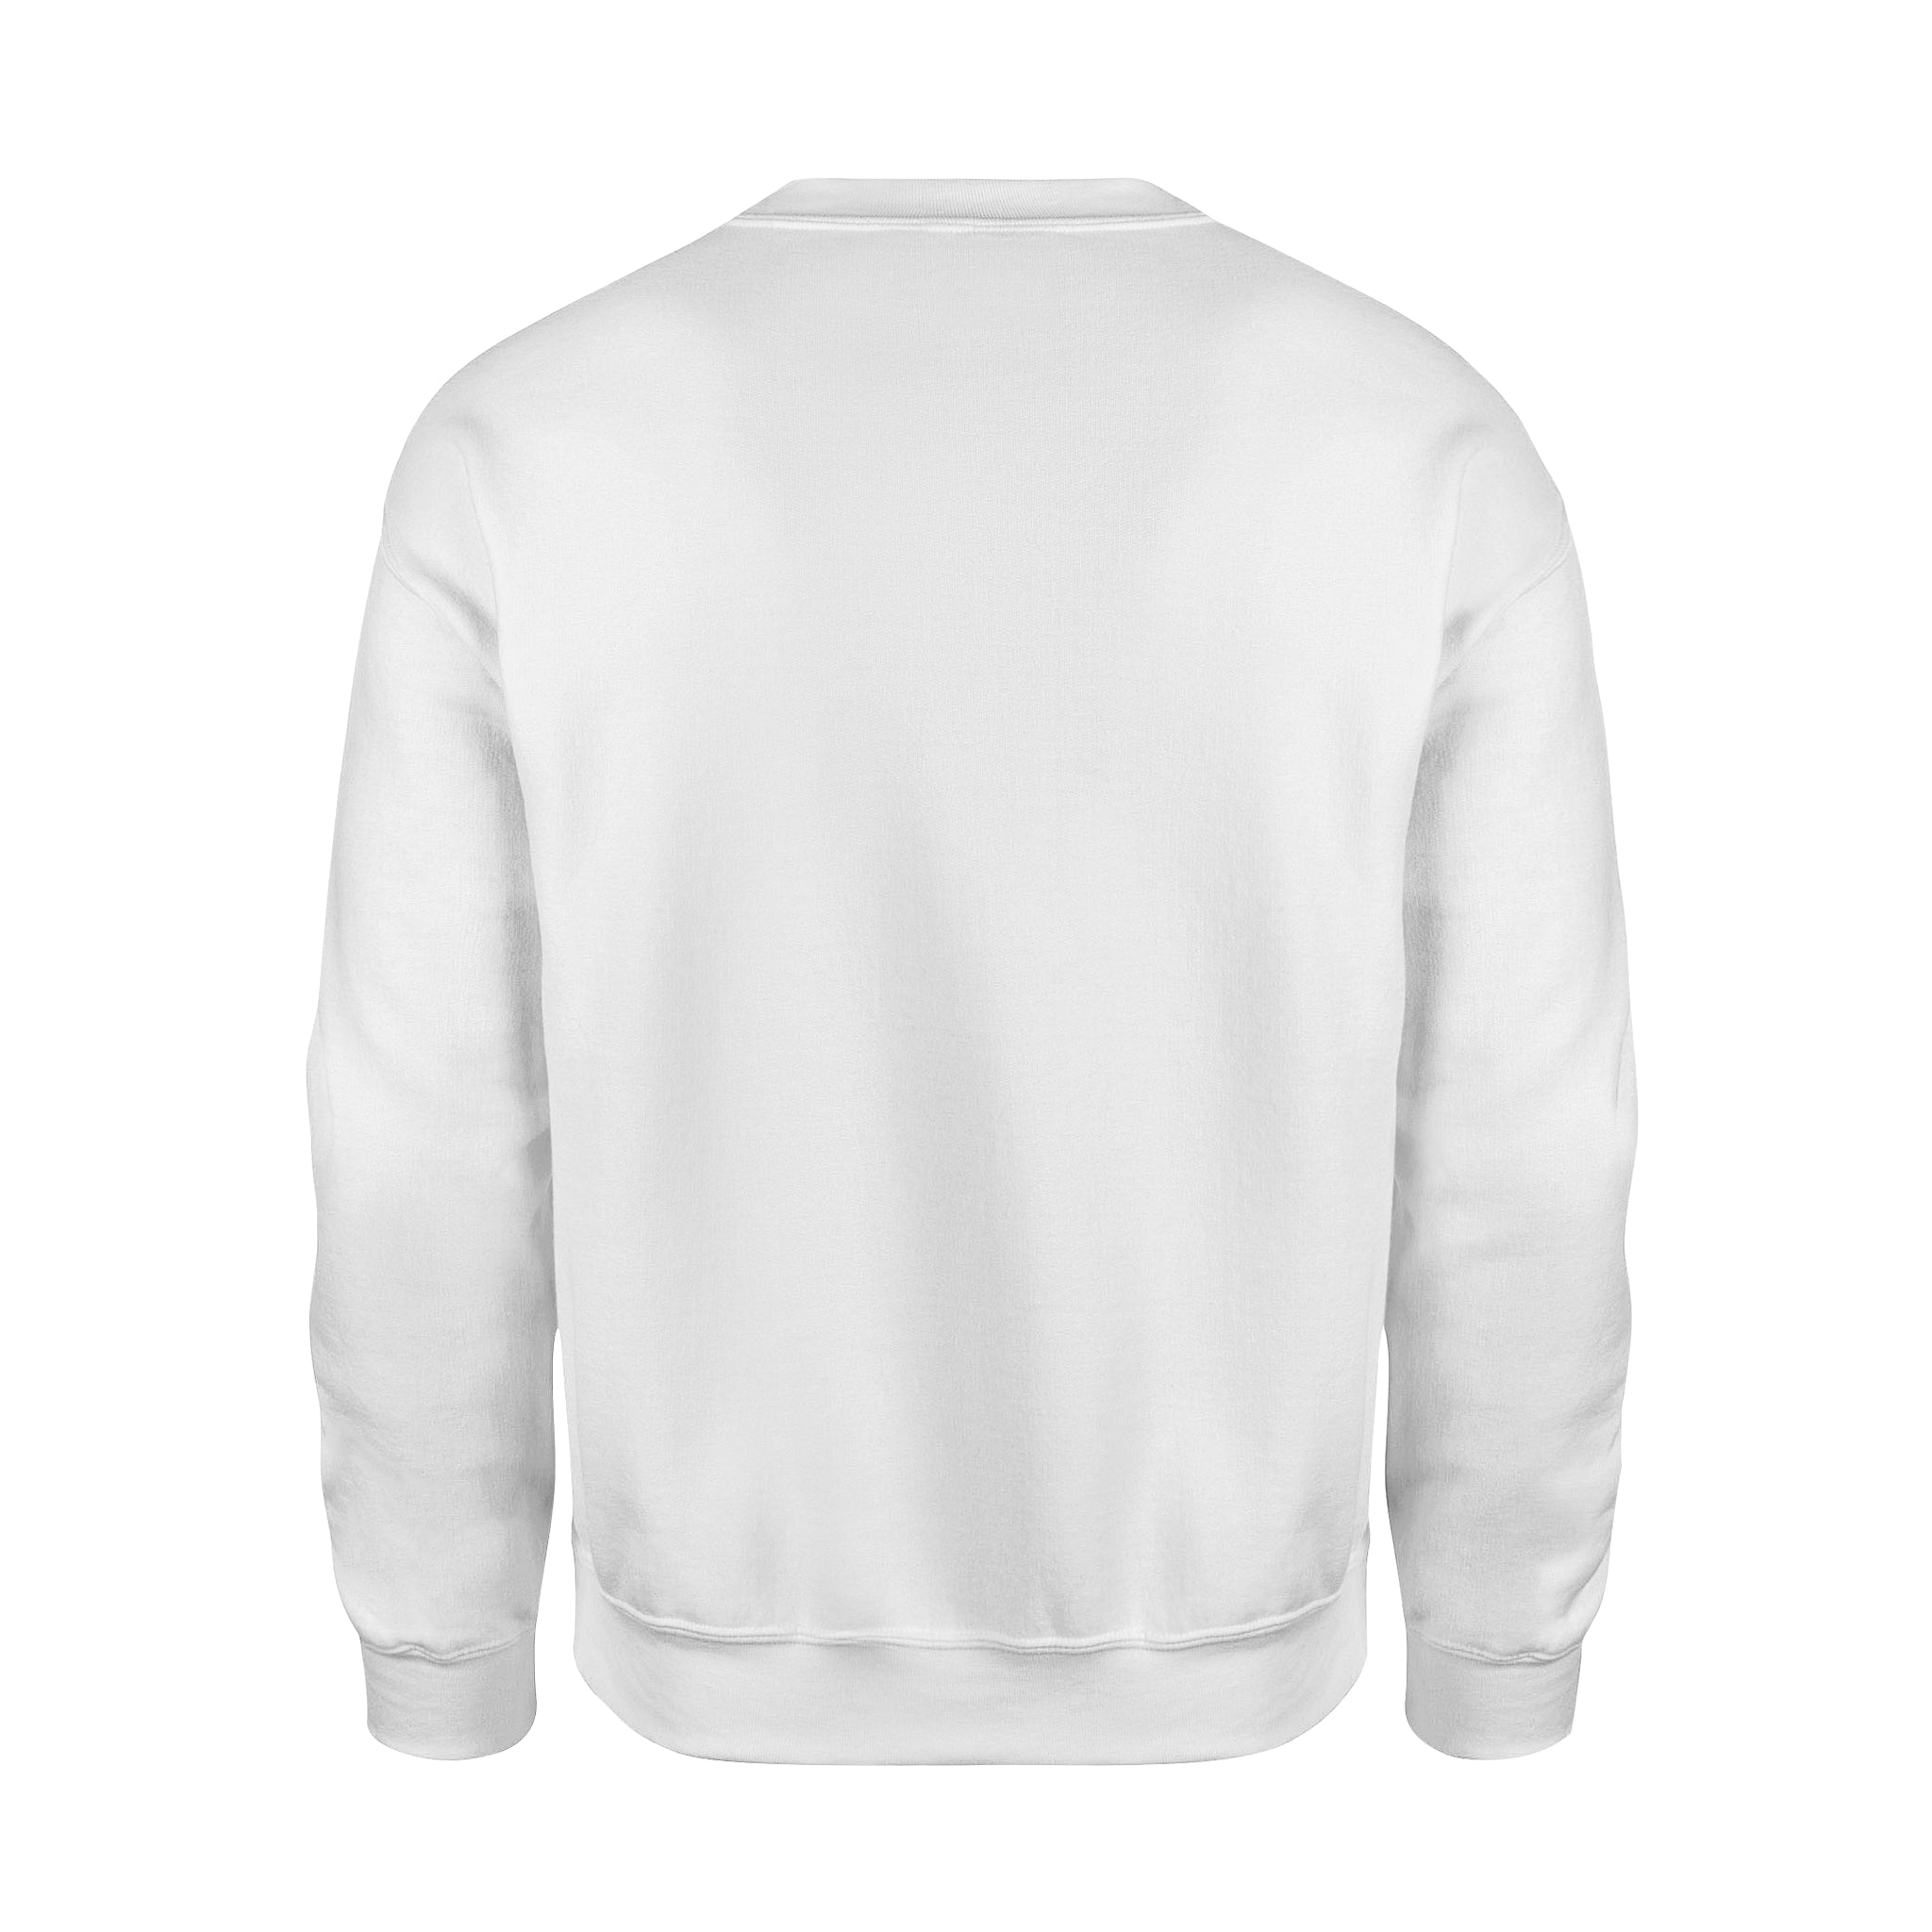 Happy Day -  Fleece Sweatshirt